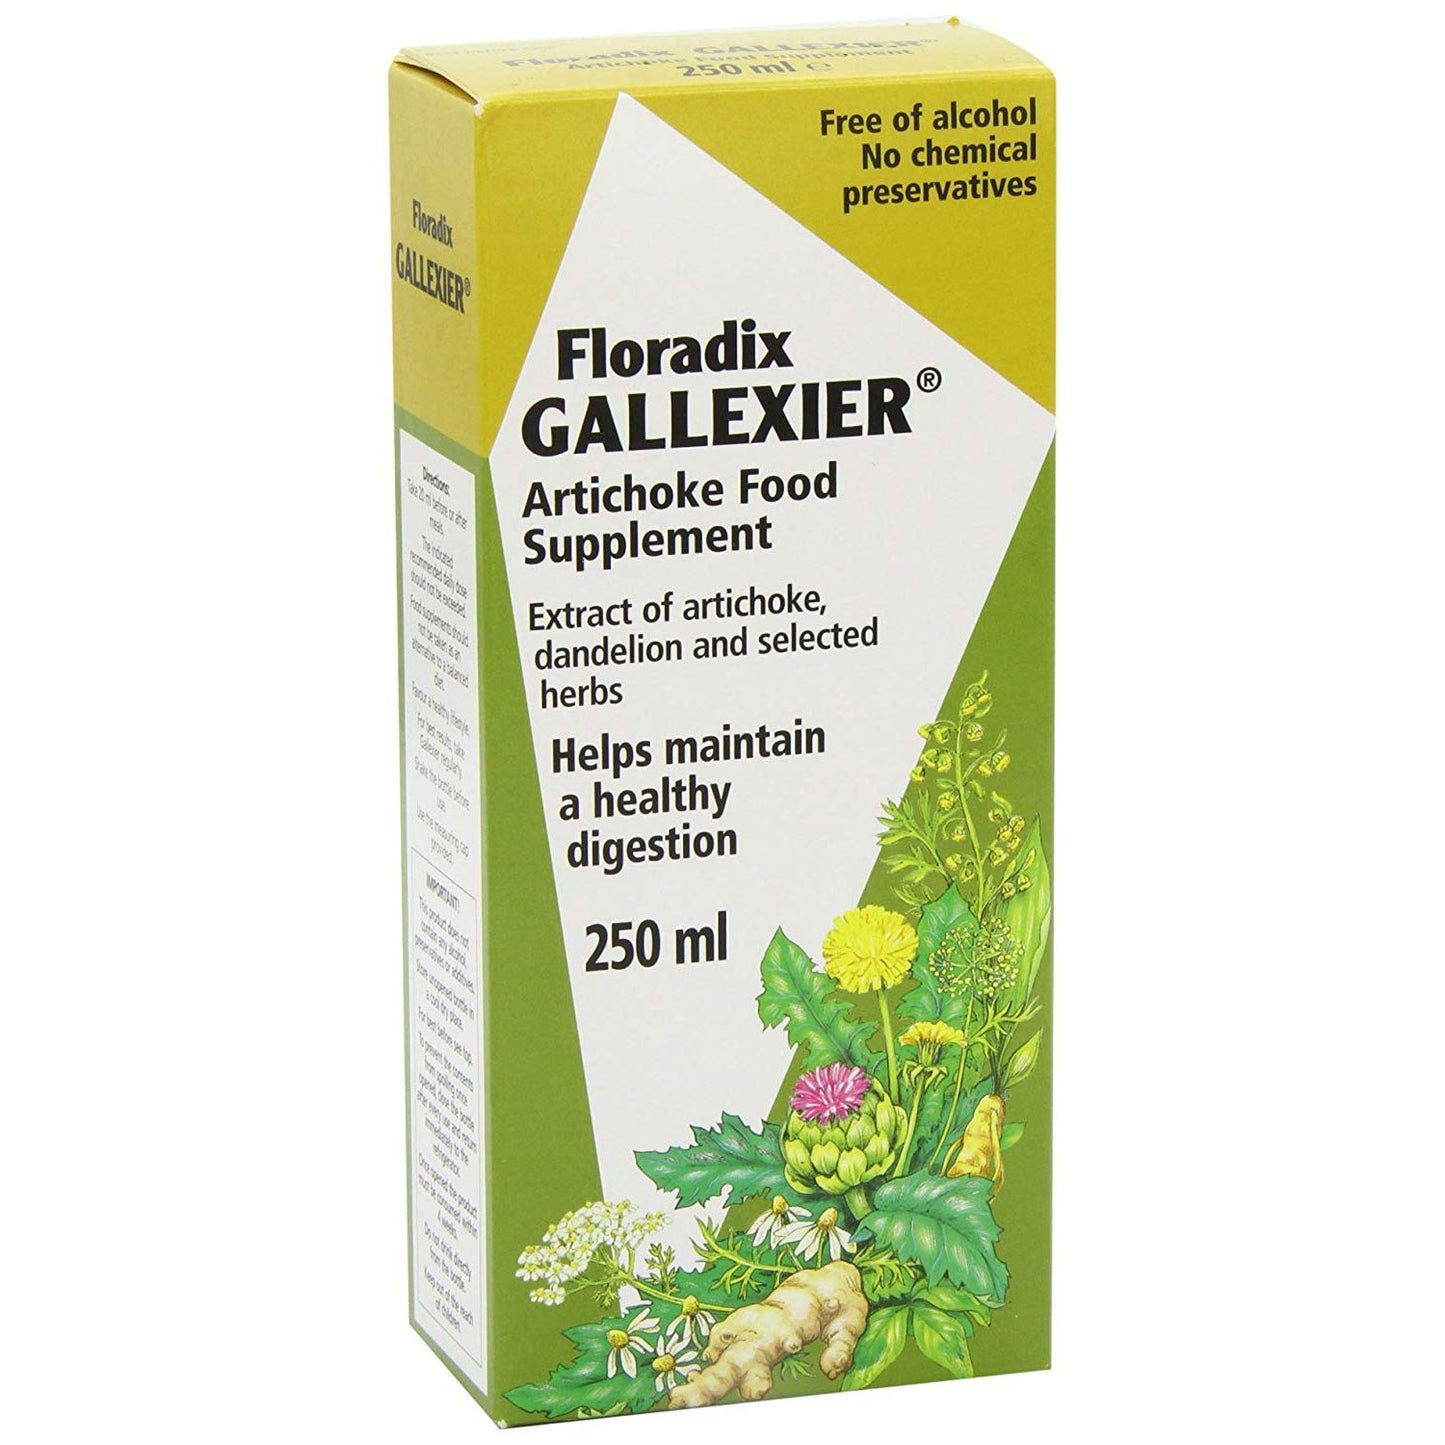 Floradix Gallexier artichoke food supplement 250ml - Just Natural